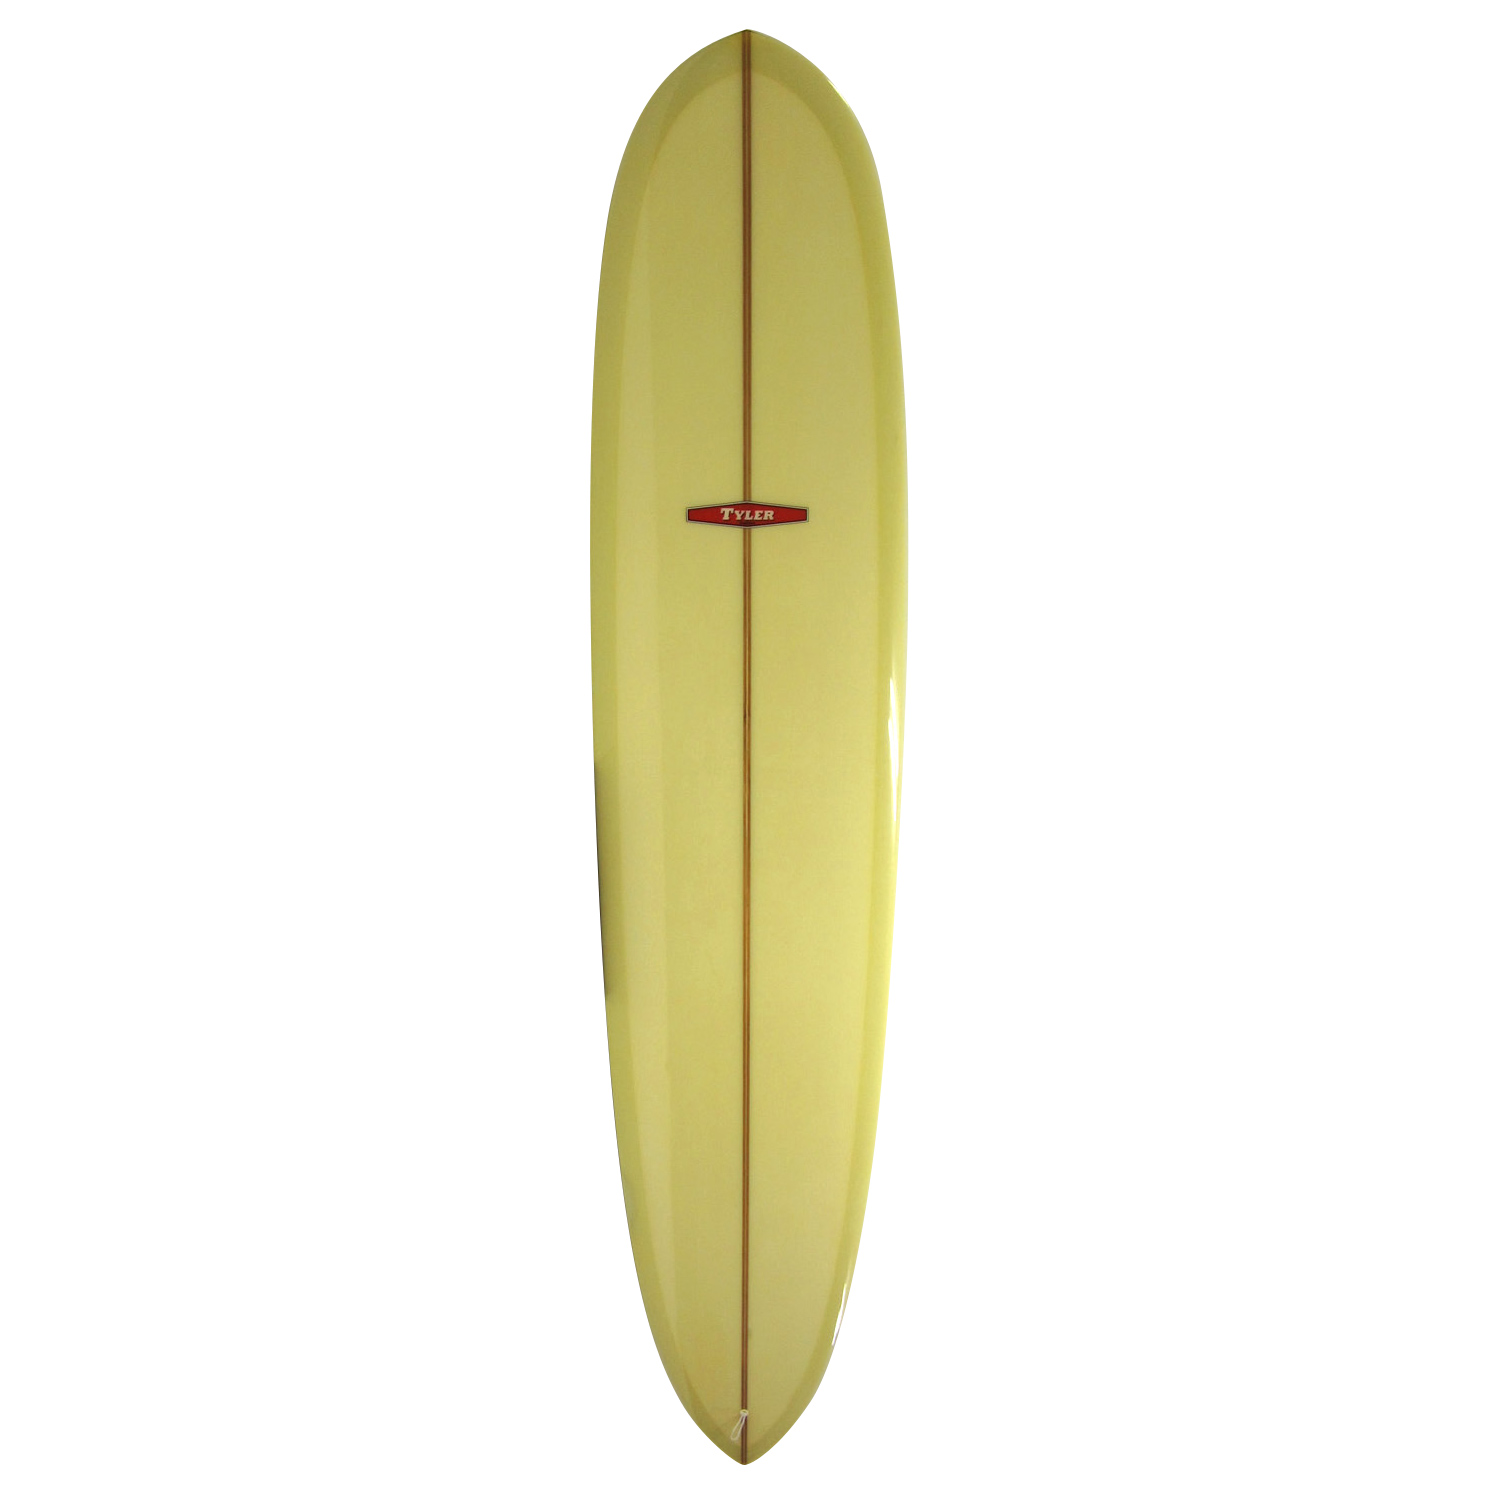 TYLER SURFBOARD 10